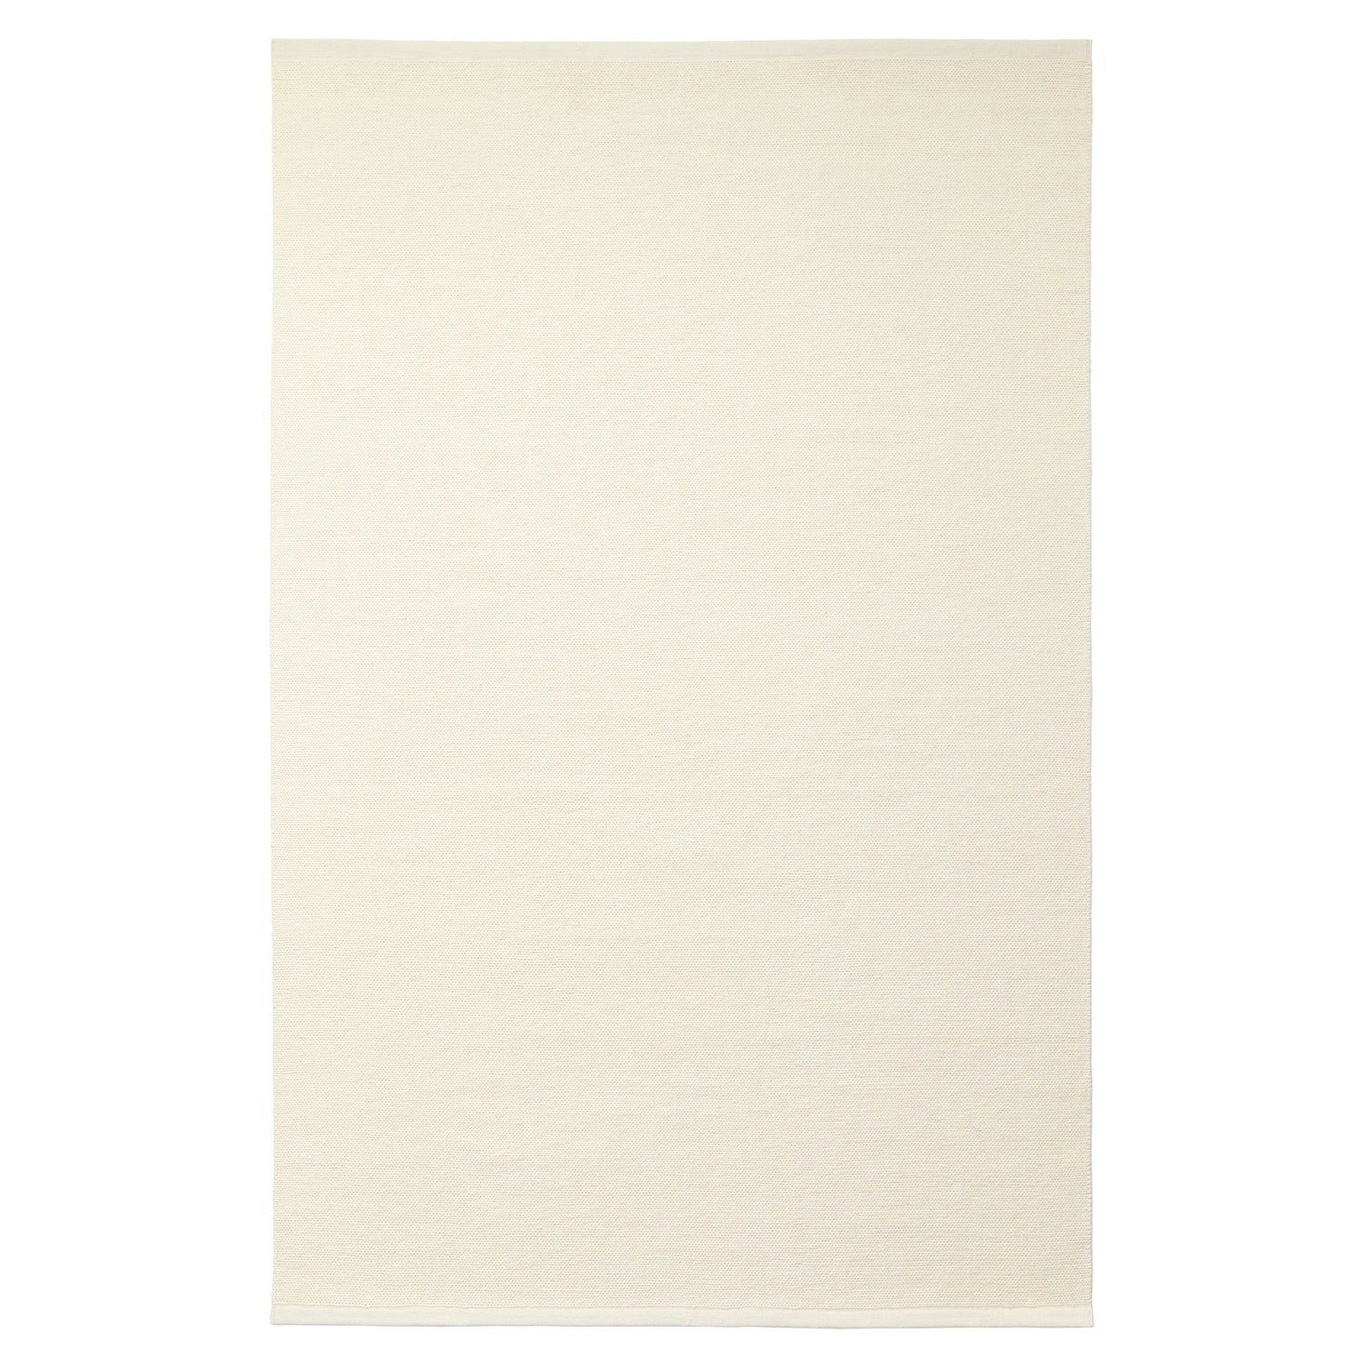 Kashmir Matta Off-white, 200x300 cm